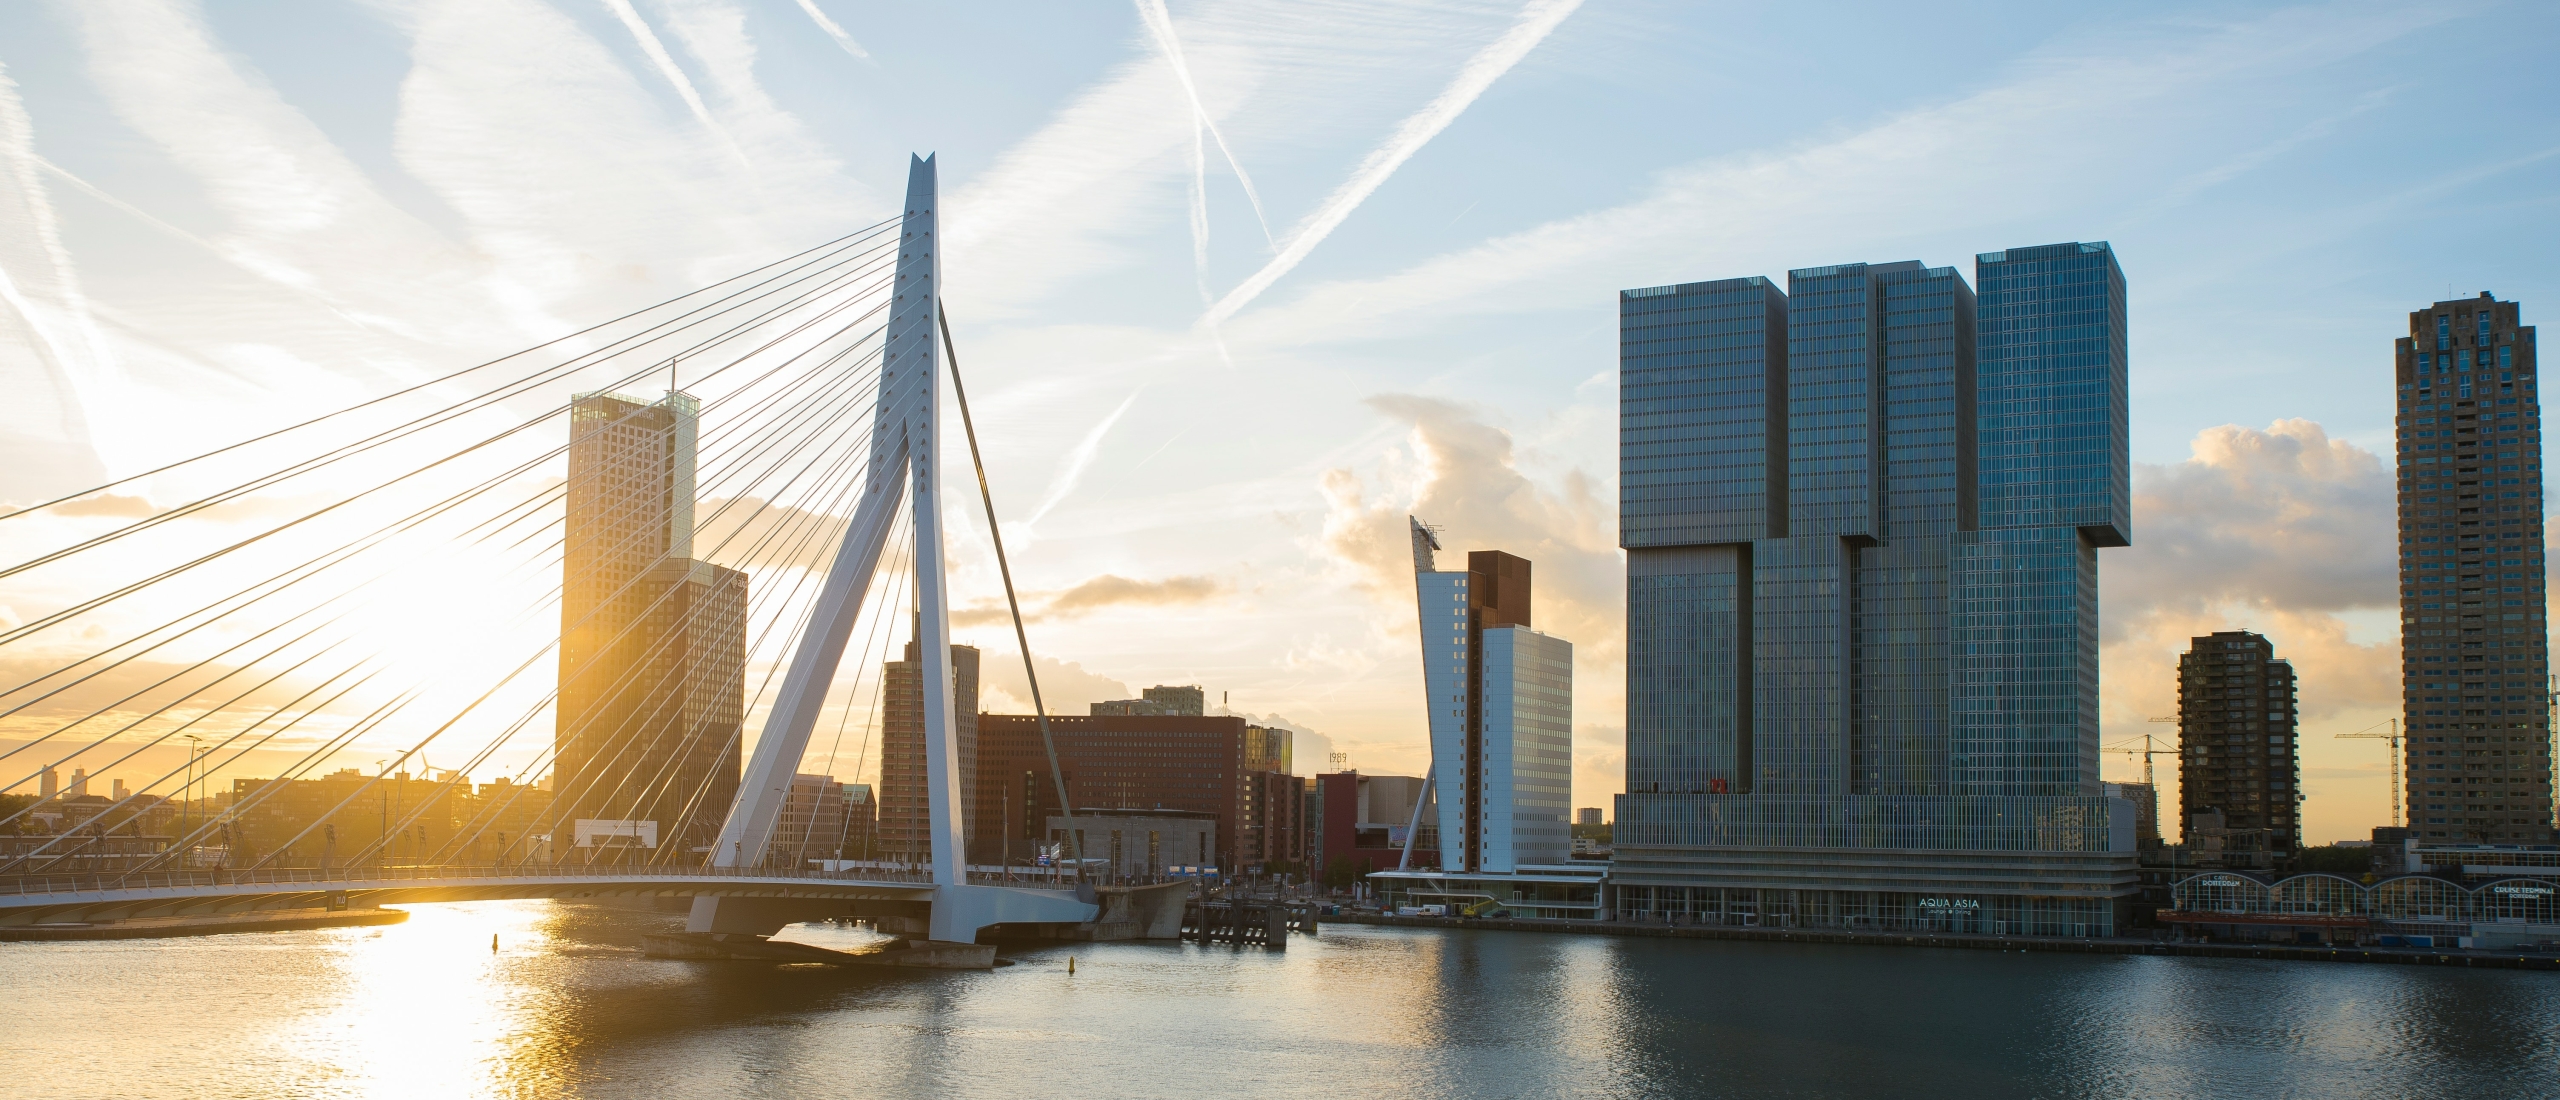 5 moderne gebouwen in Rotterdam om te fotograferen